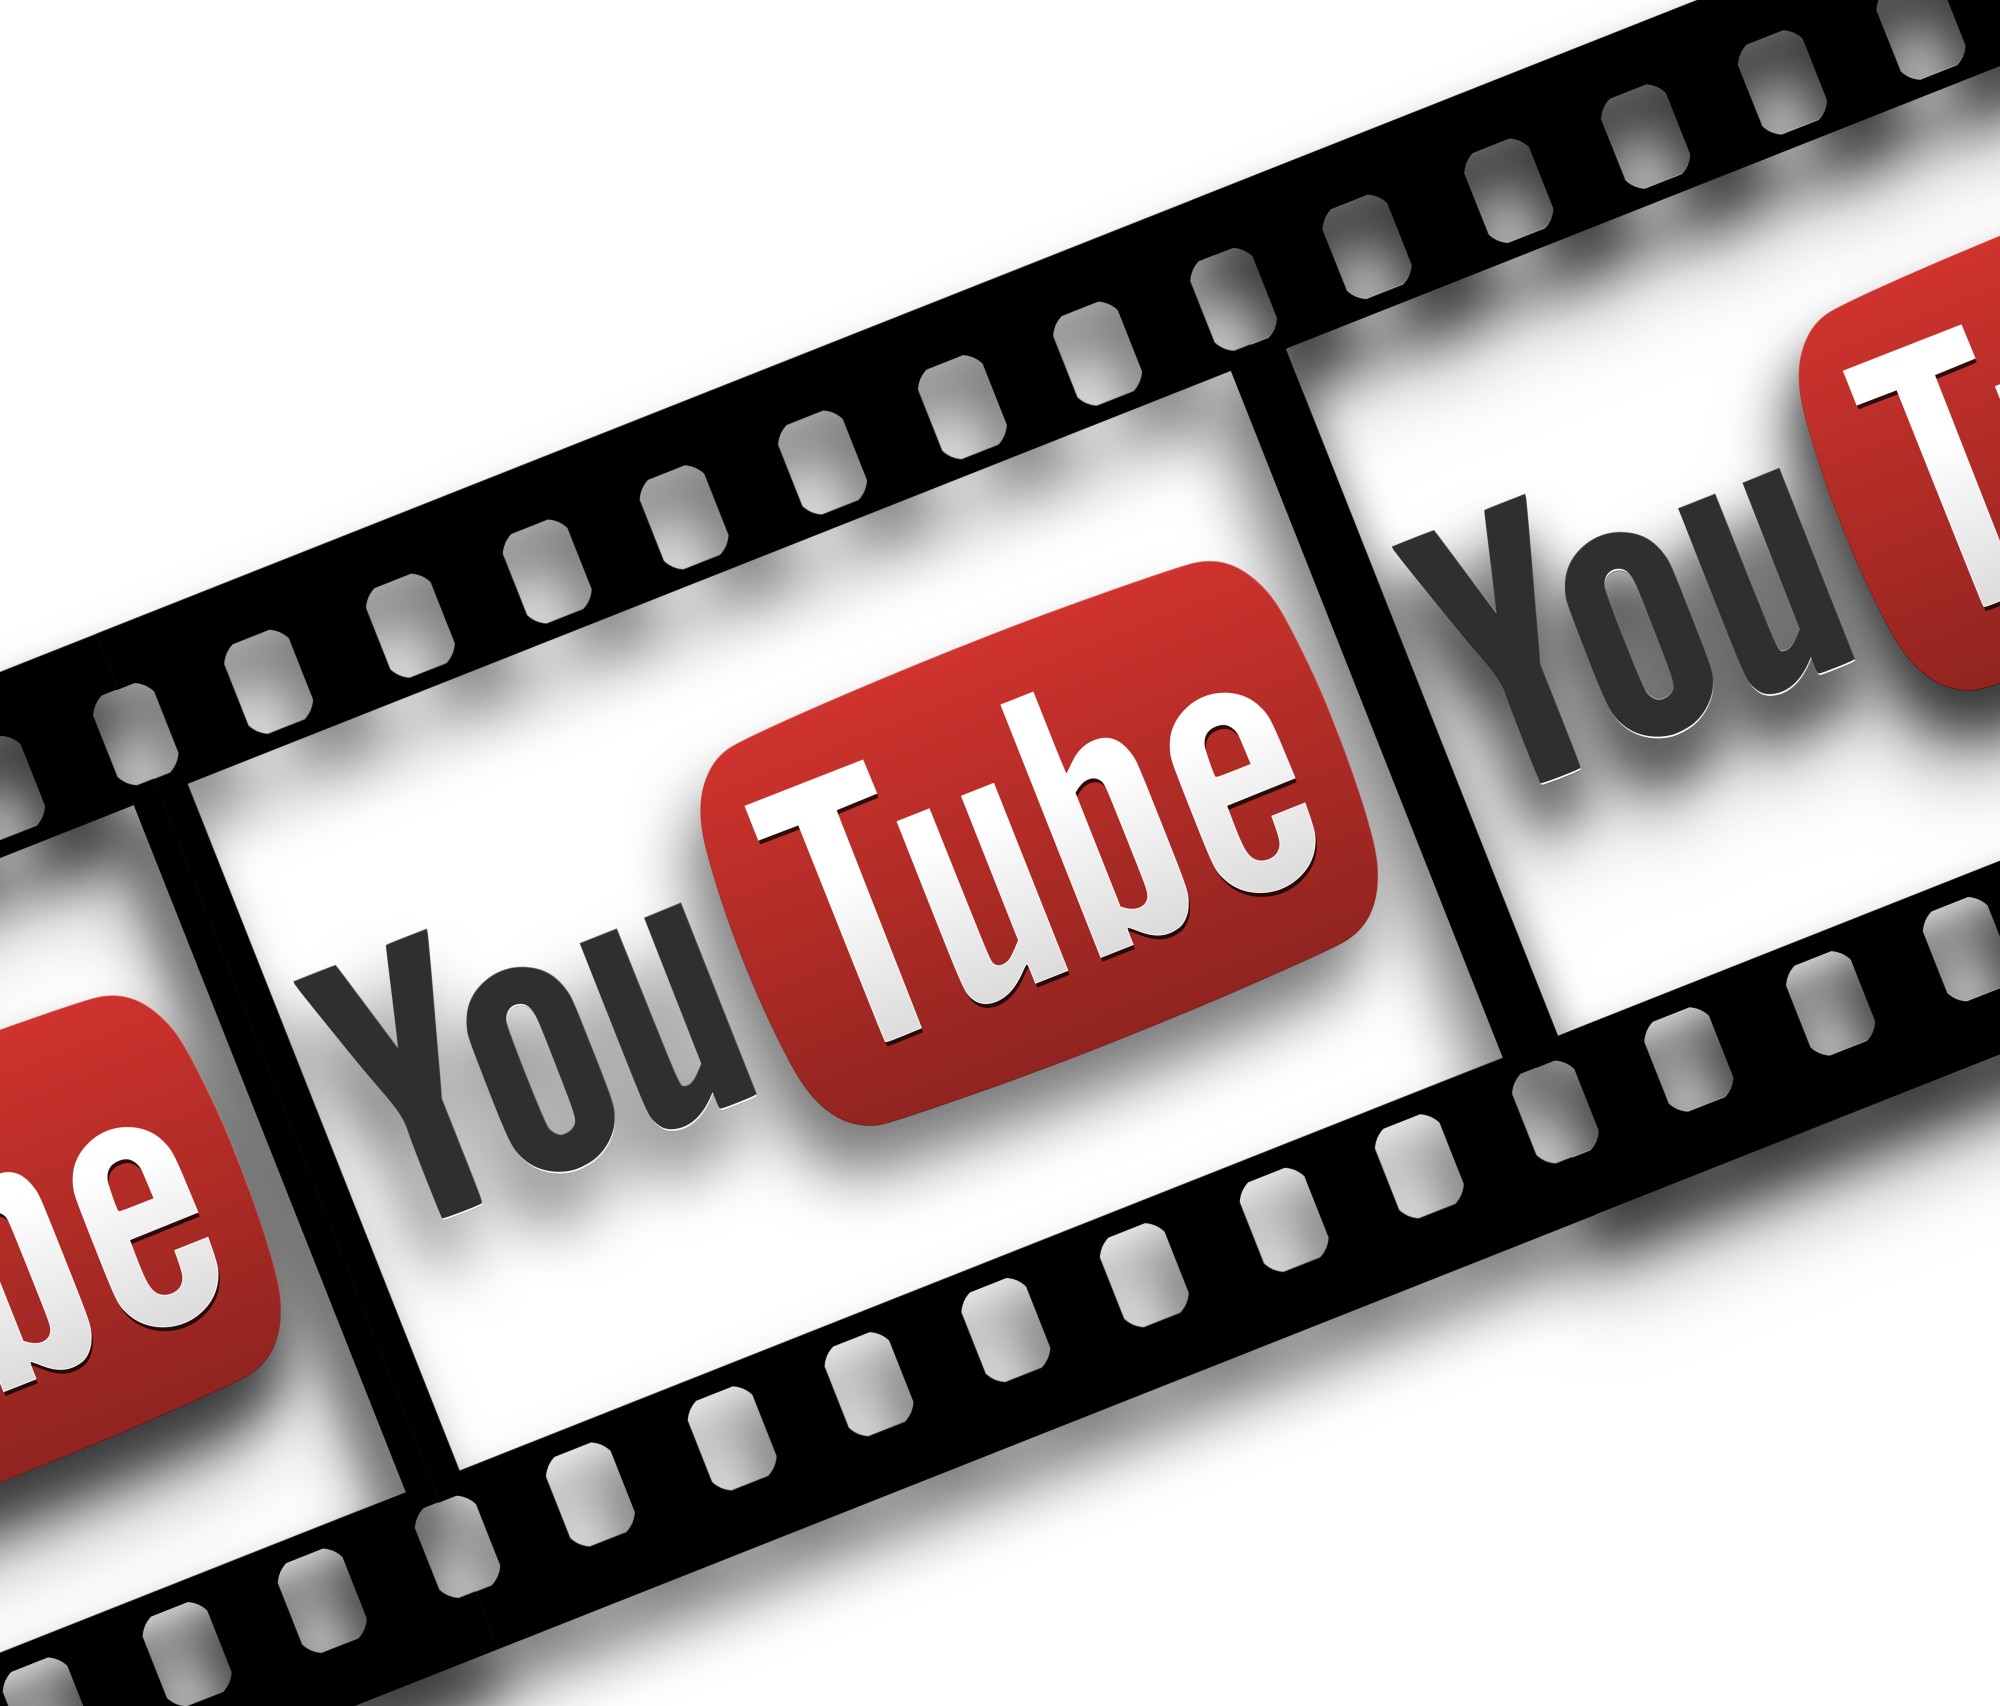 free youtube logo maker online